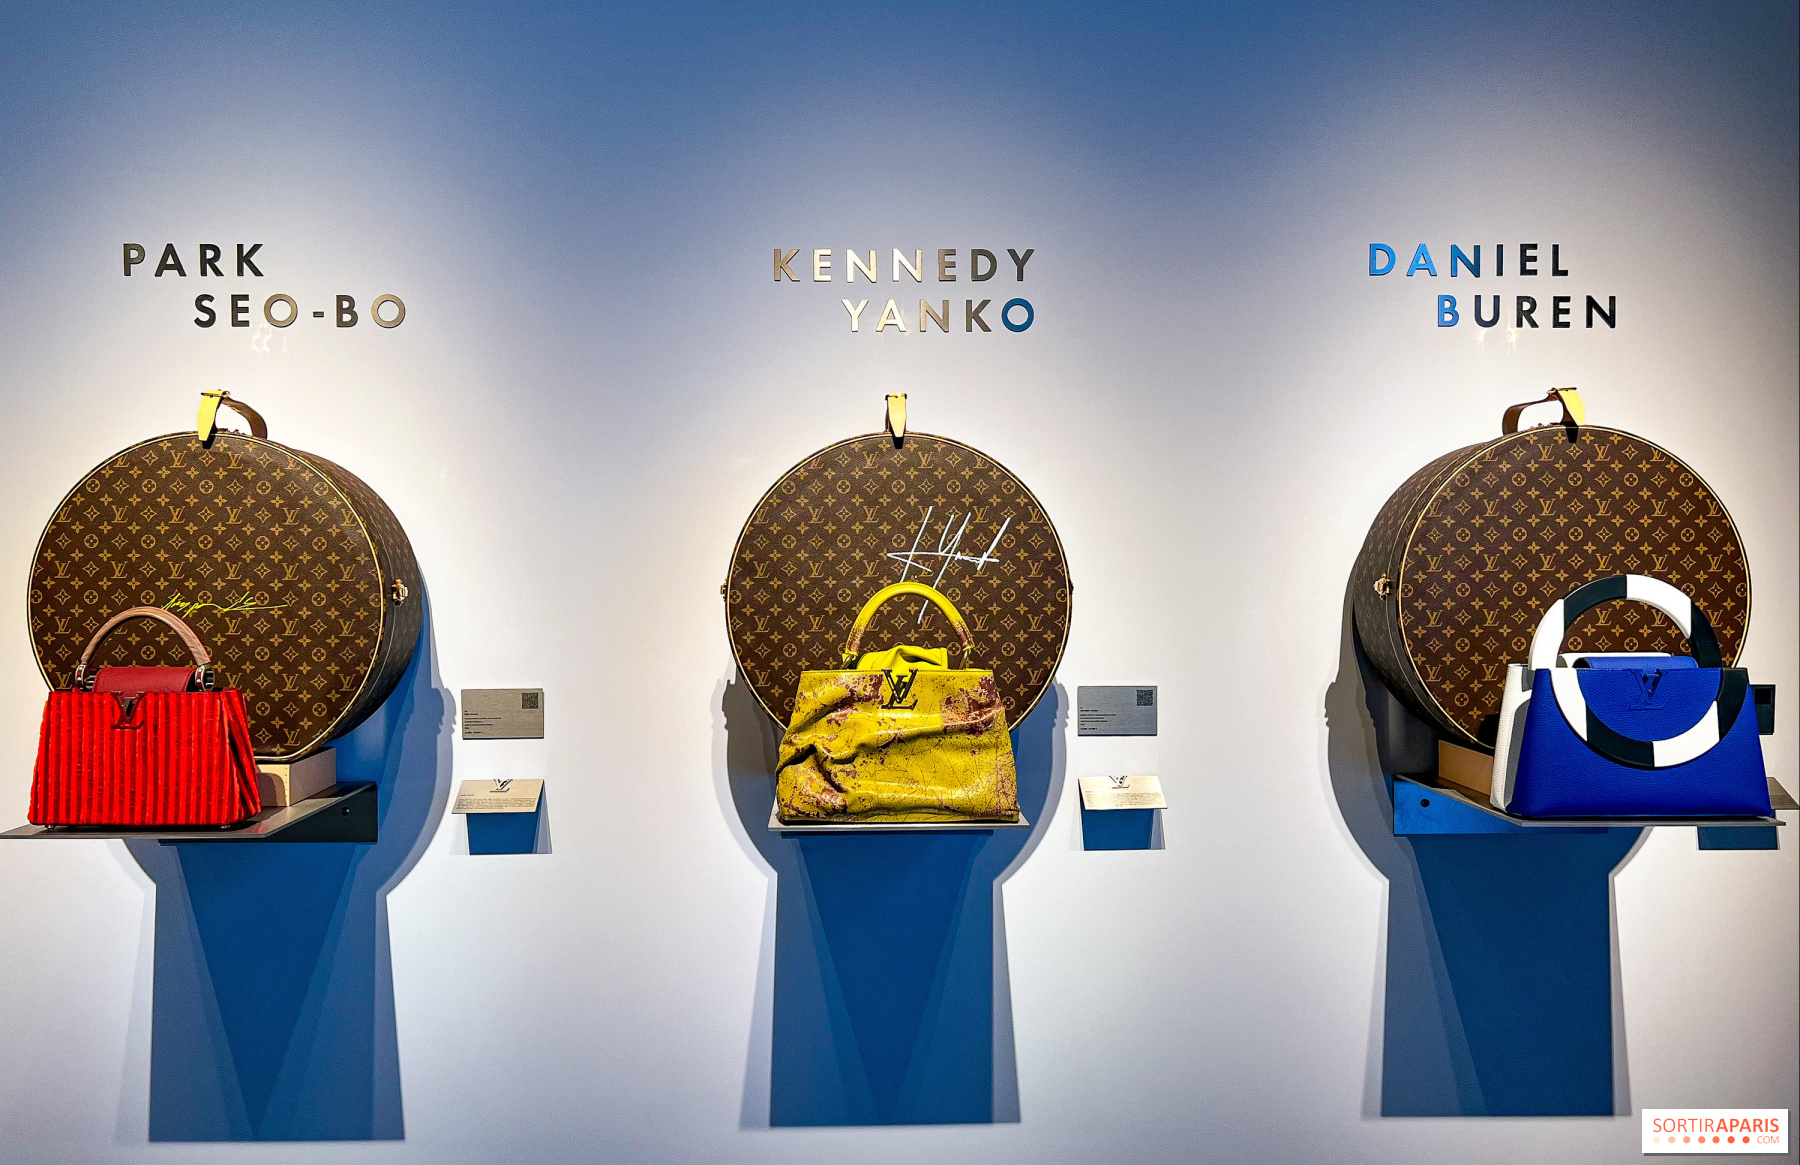 Free exhibition of Louis Vuitton bags at a prestigious Paris auction house  